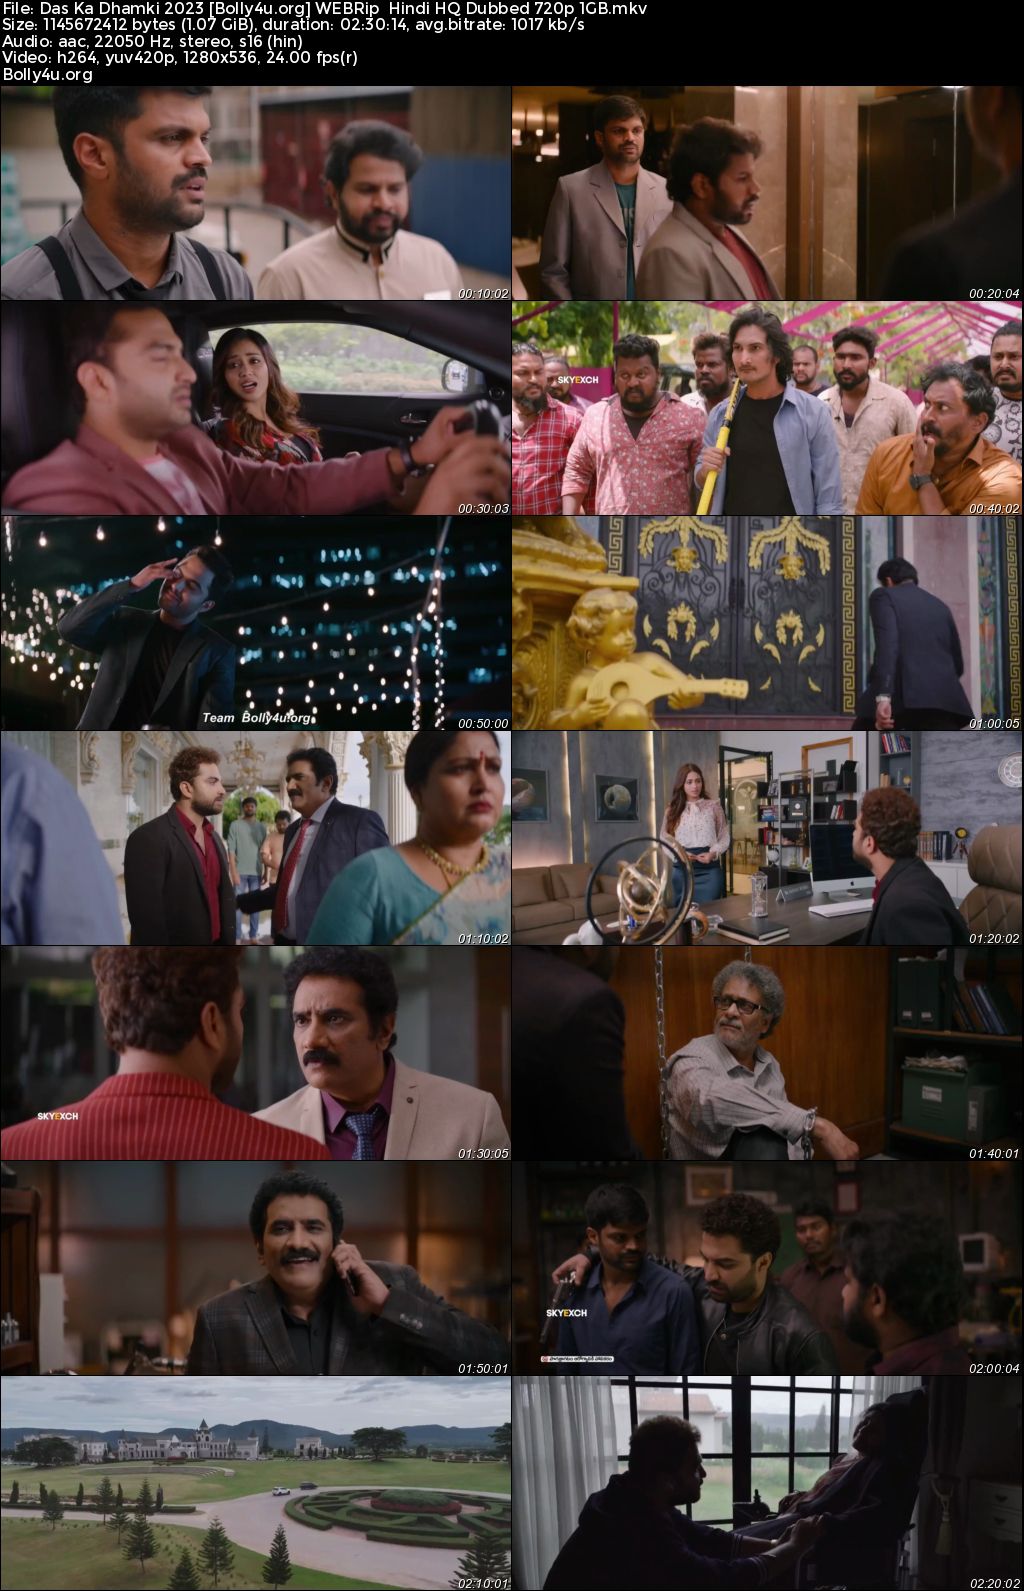 Das Ka Dhamki 2023 WEBRip Hindi HQ Dubbed Full Movie Download 1080p 720p 480p